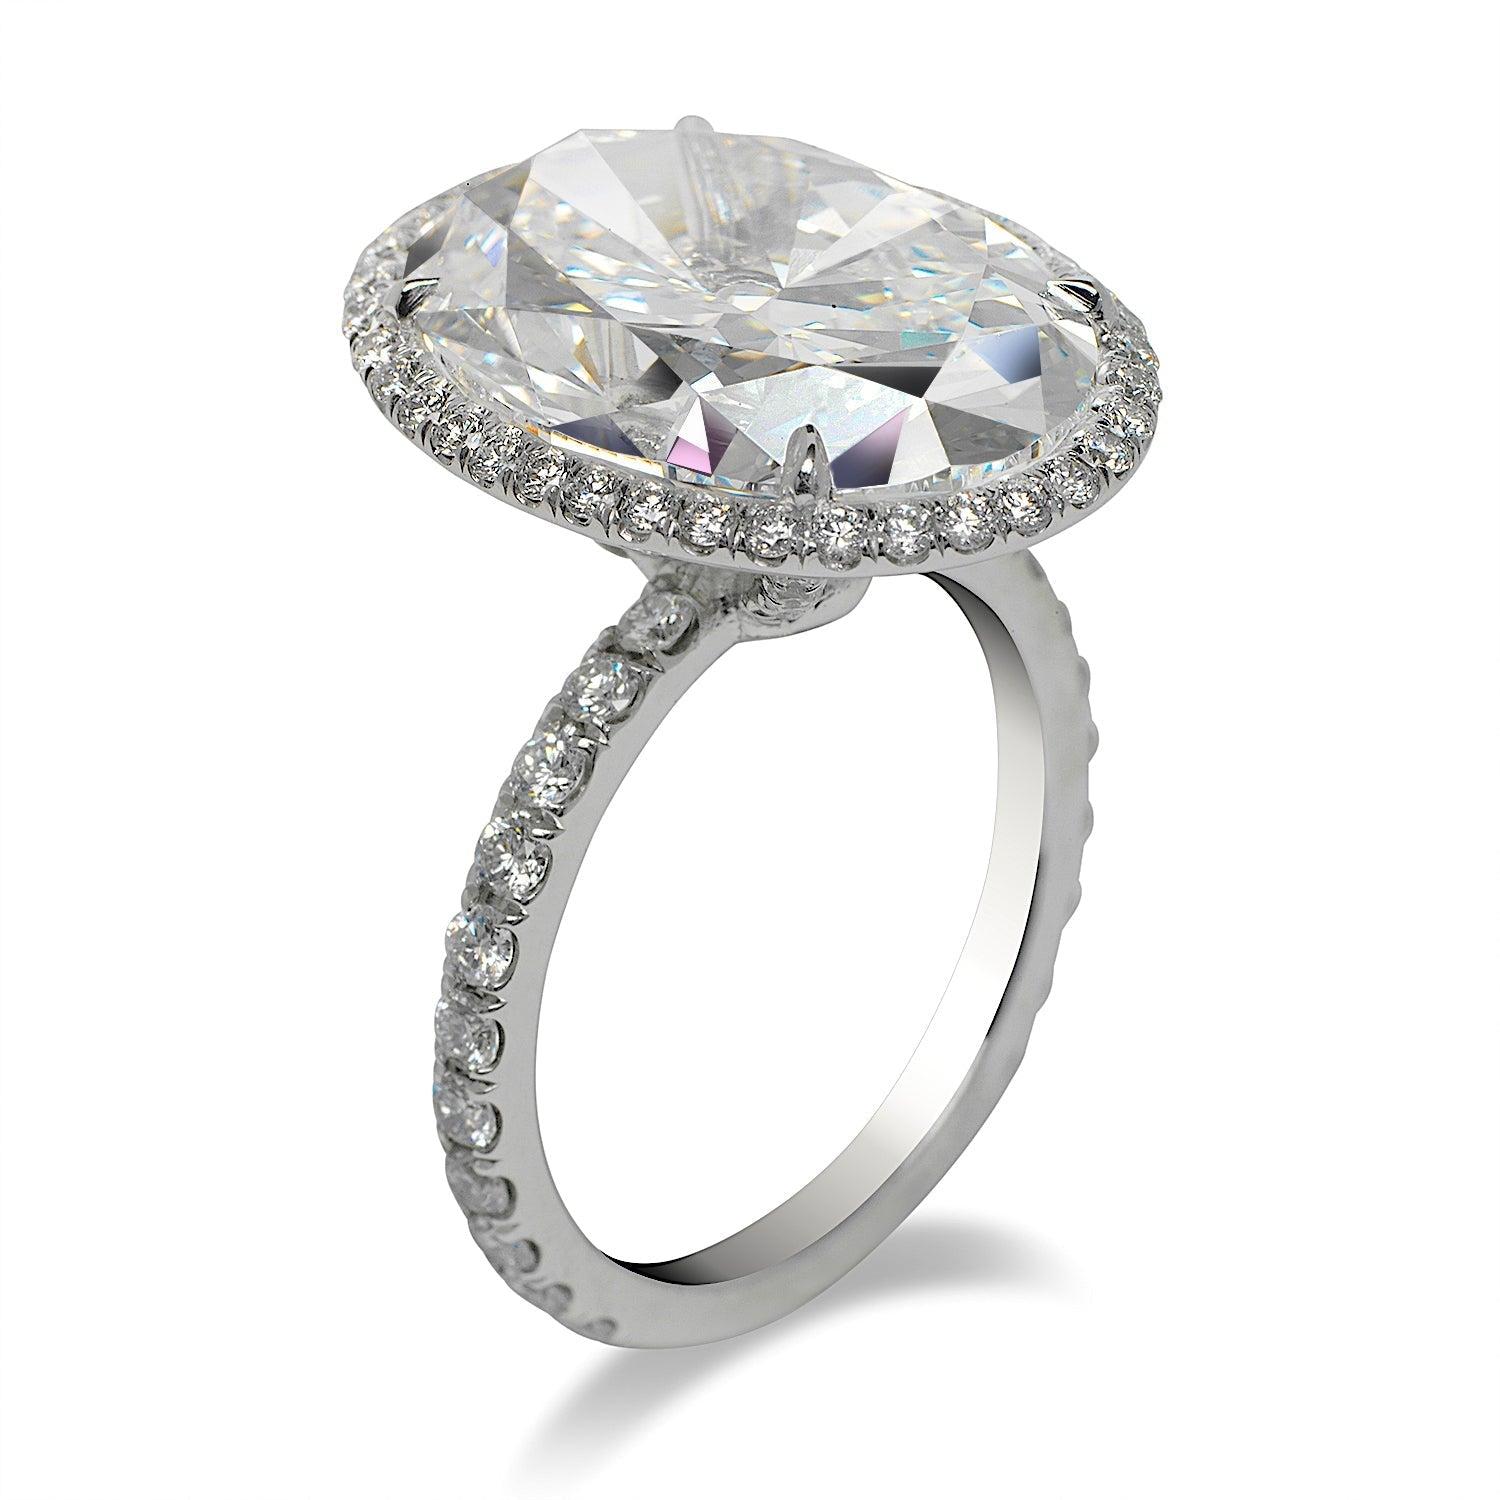 12 carat oval diamond ring